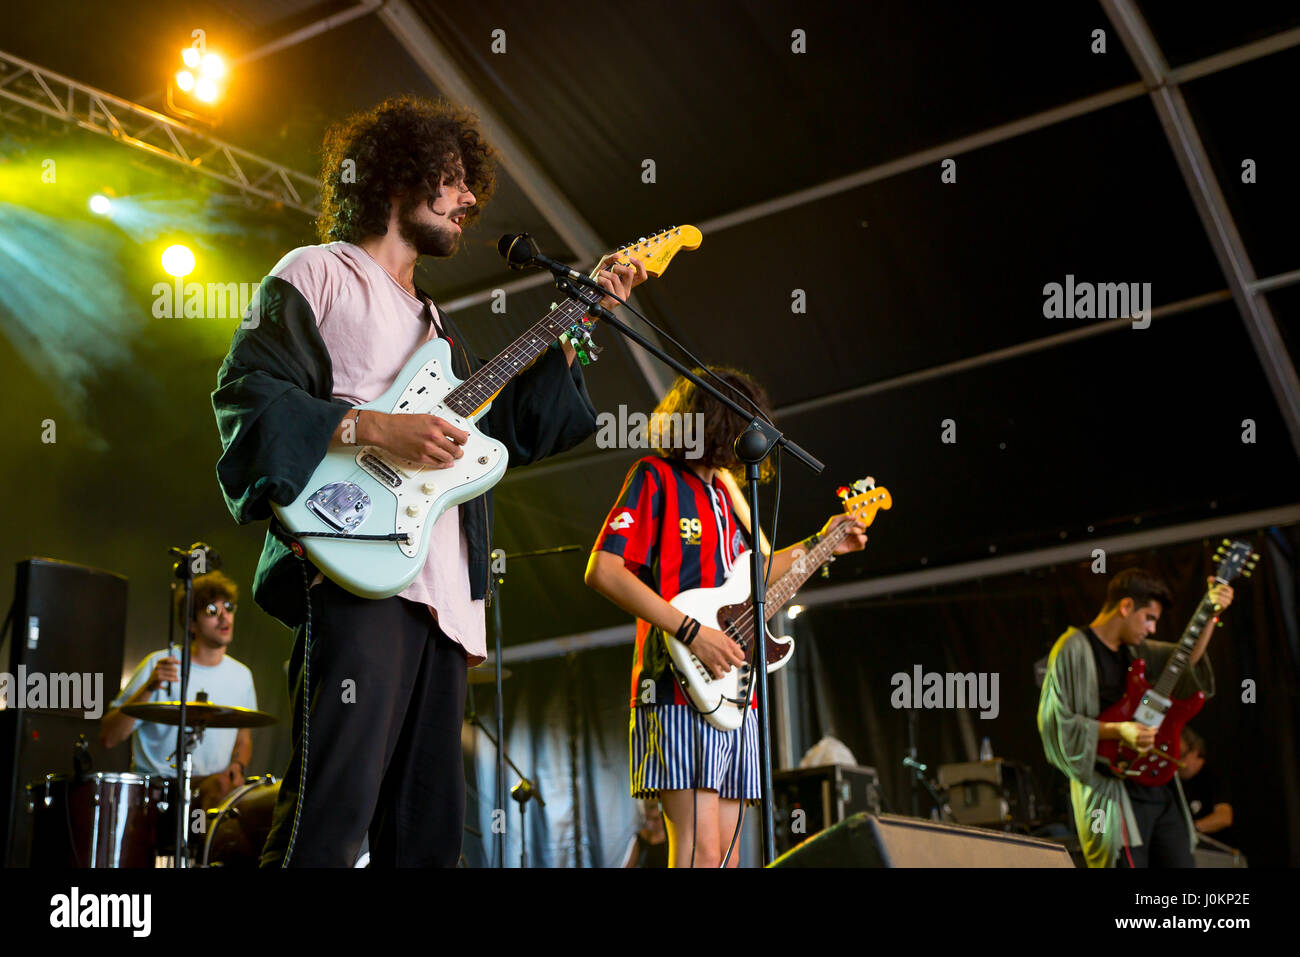 BENICASSIM, ESPAGNE - 16 juil : Baywaves (rock psychédélique) produisent en concert au Festival le 16 juillet 2016 à Benicassim, Espagne. Banque D'Images